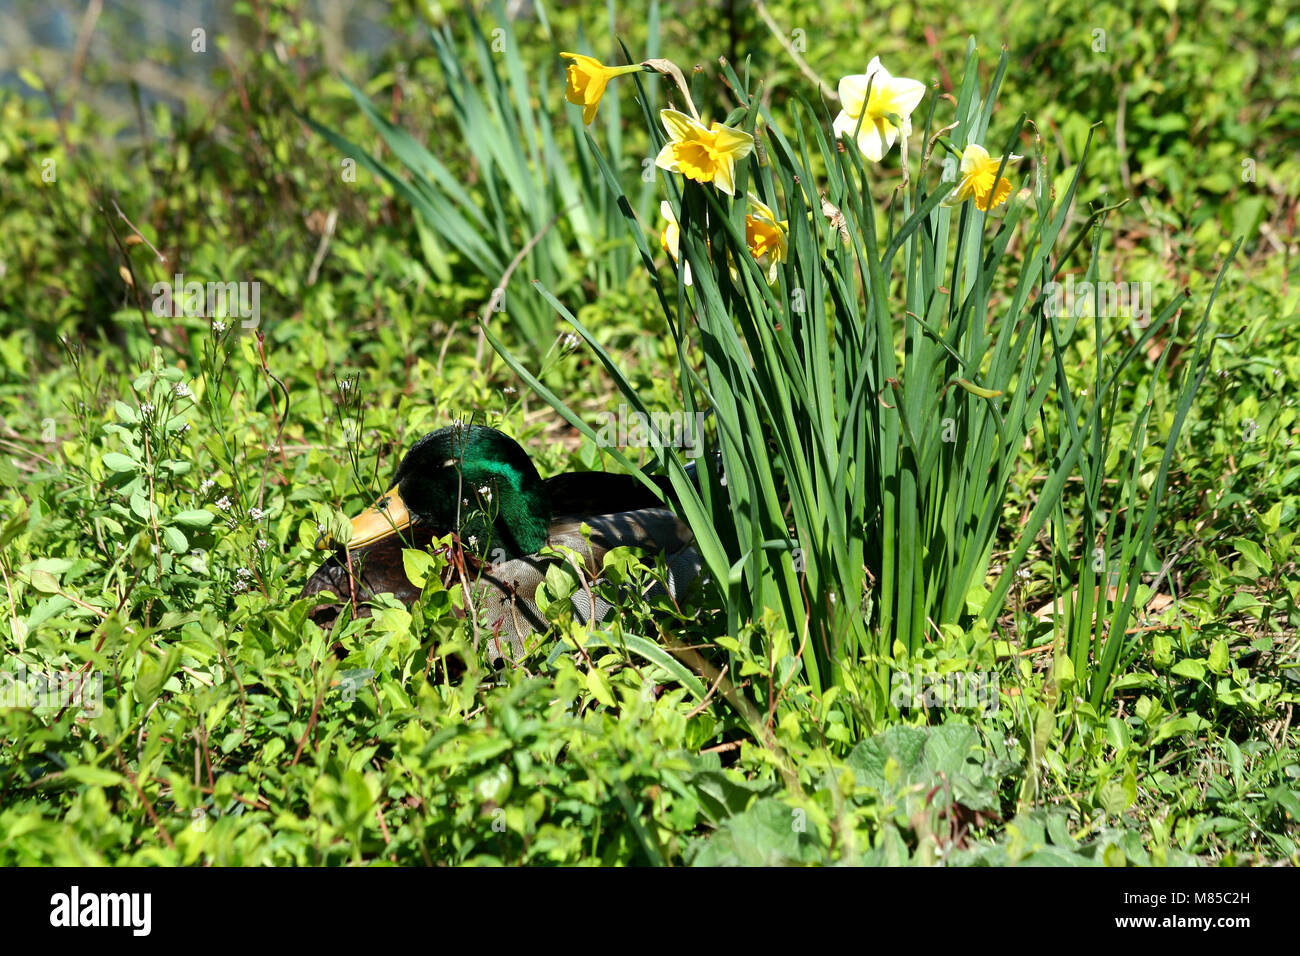 A Mallard duck near daffodils Stock Photo